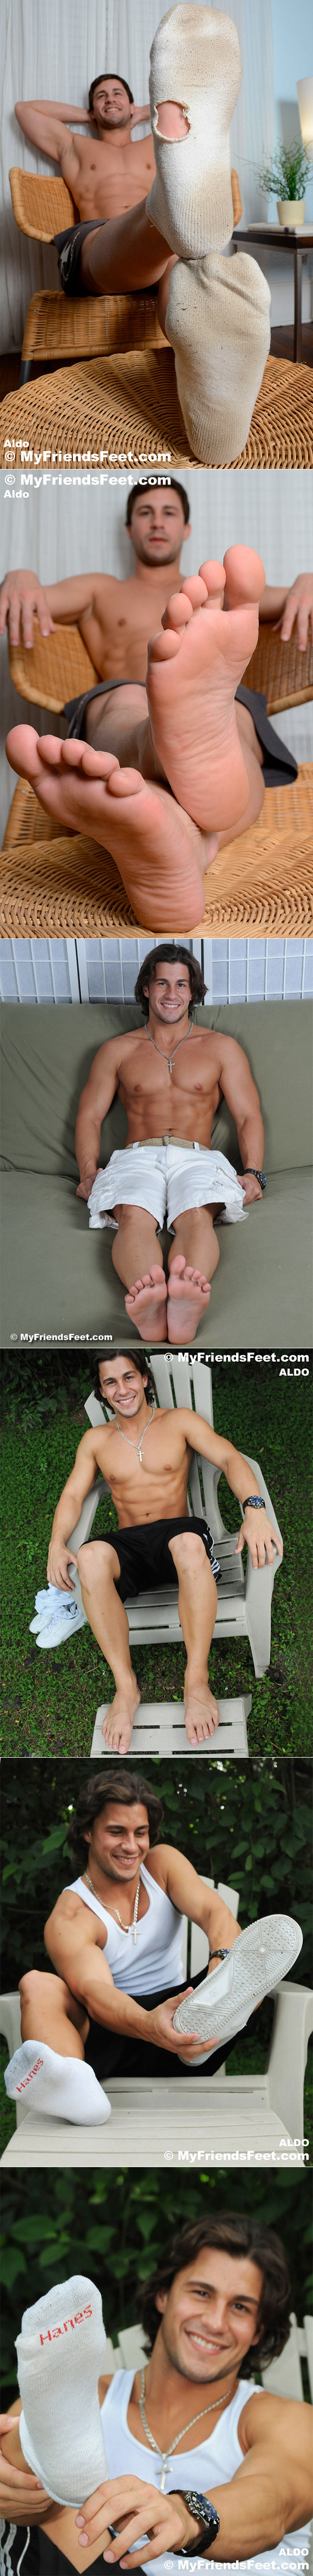 MyFriendsFeet Aldo Closeup Male Feet Soles Toes Size 11 Feet Worship Dirty Torn Socks Ricky Larkin 1